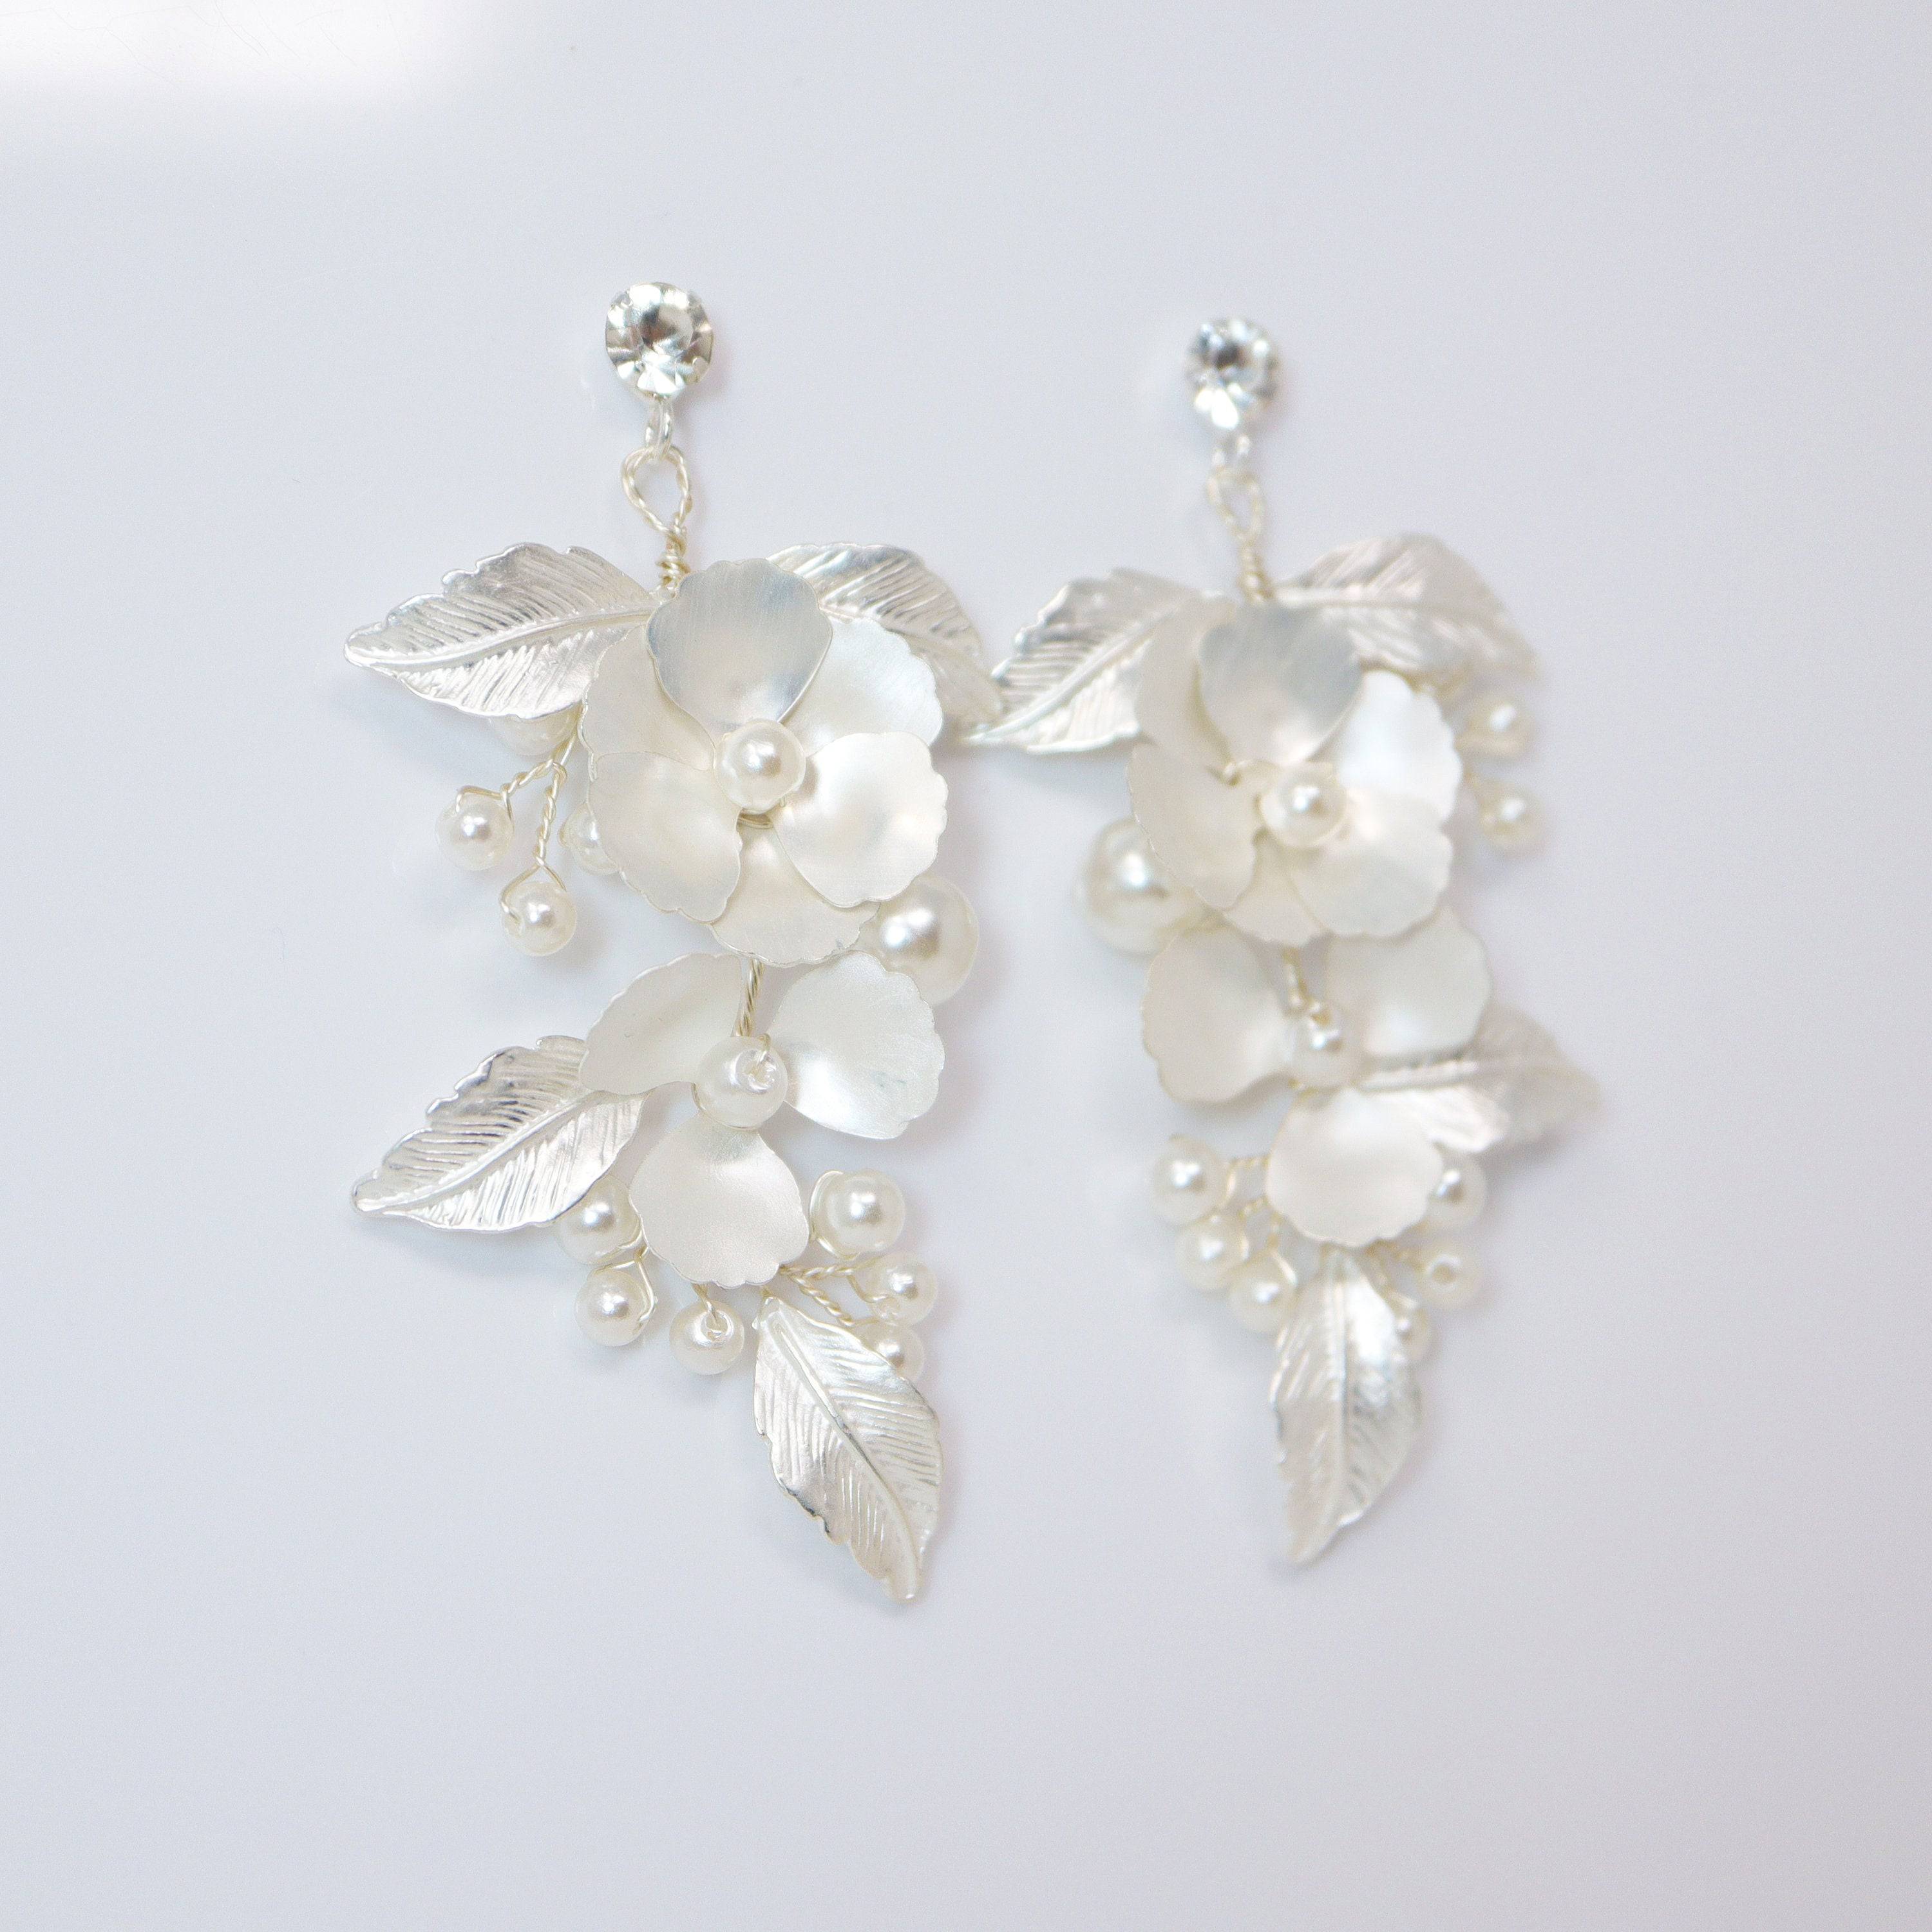 Floral Bridal Earrings, Rhinestone Earrings, Crystal Wedding Earrings,  Wedding Jewelry, Bridal Jewelry, Bridal Earrings, Statement Earrings - Etsy